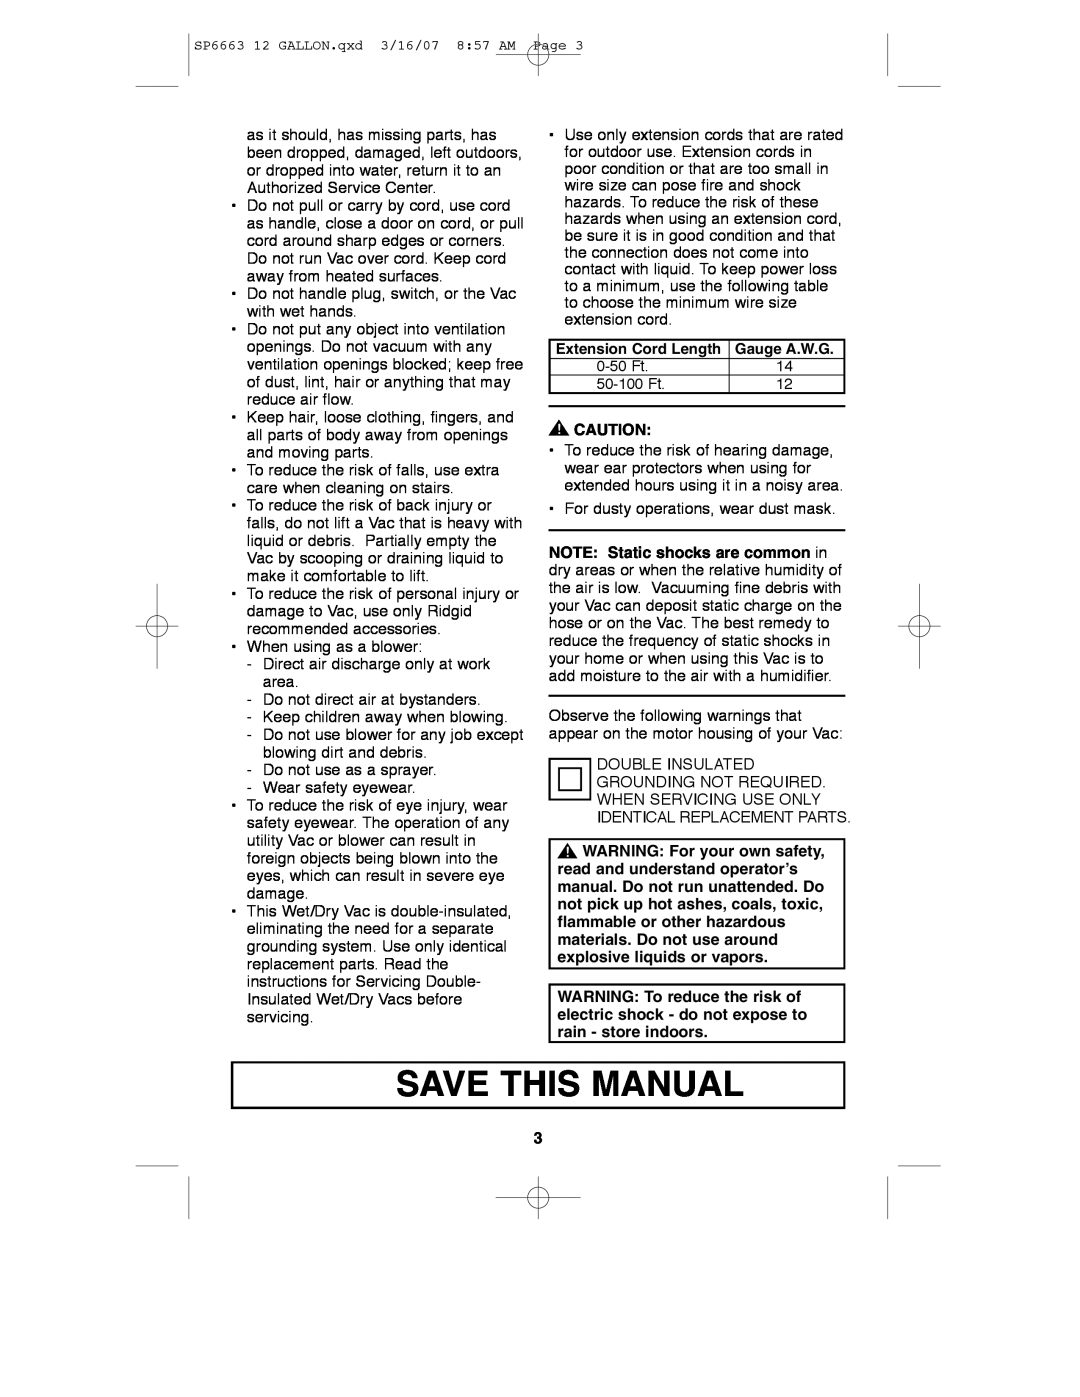 RIDGID WD1250 manual Save This Manual 